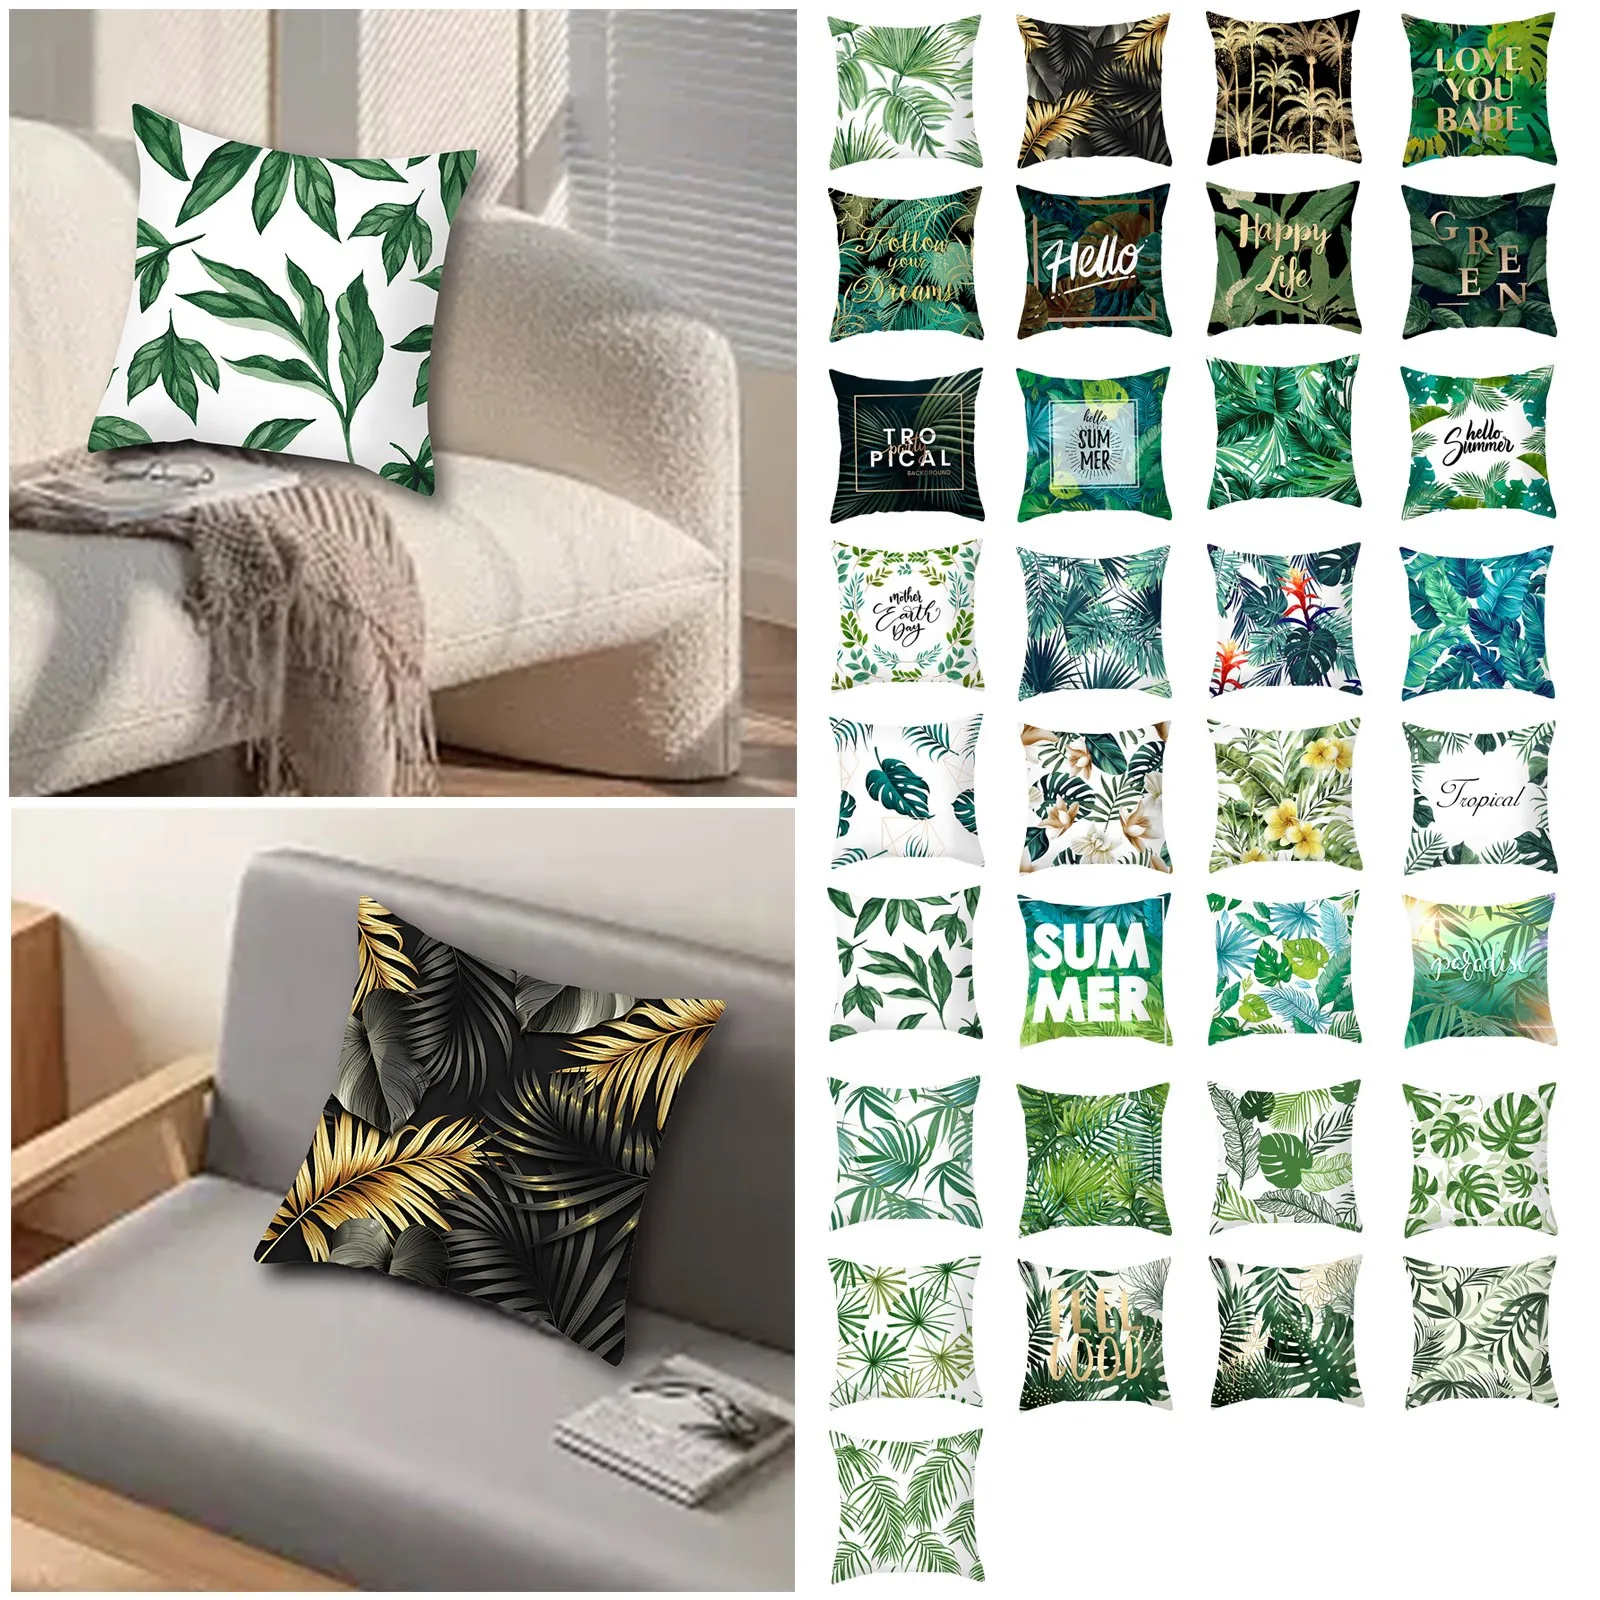 

Декоративная наволочка для дивана, диванная подушка с изображением зеленых растительных джунглей, листьев тропических дождевых лесов, в деревенском стиле, для кровати